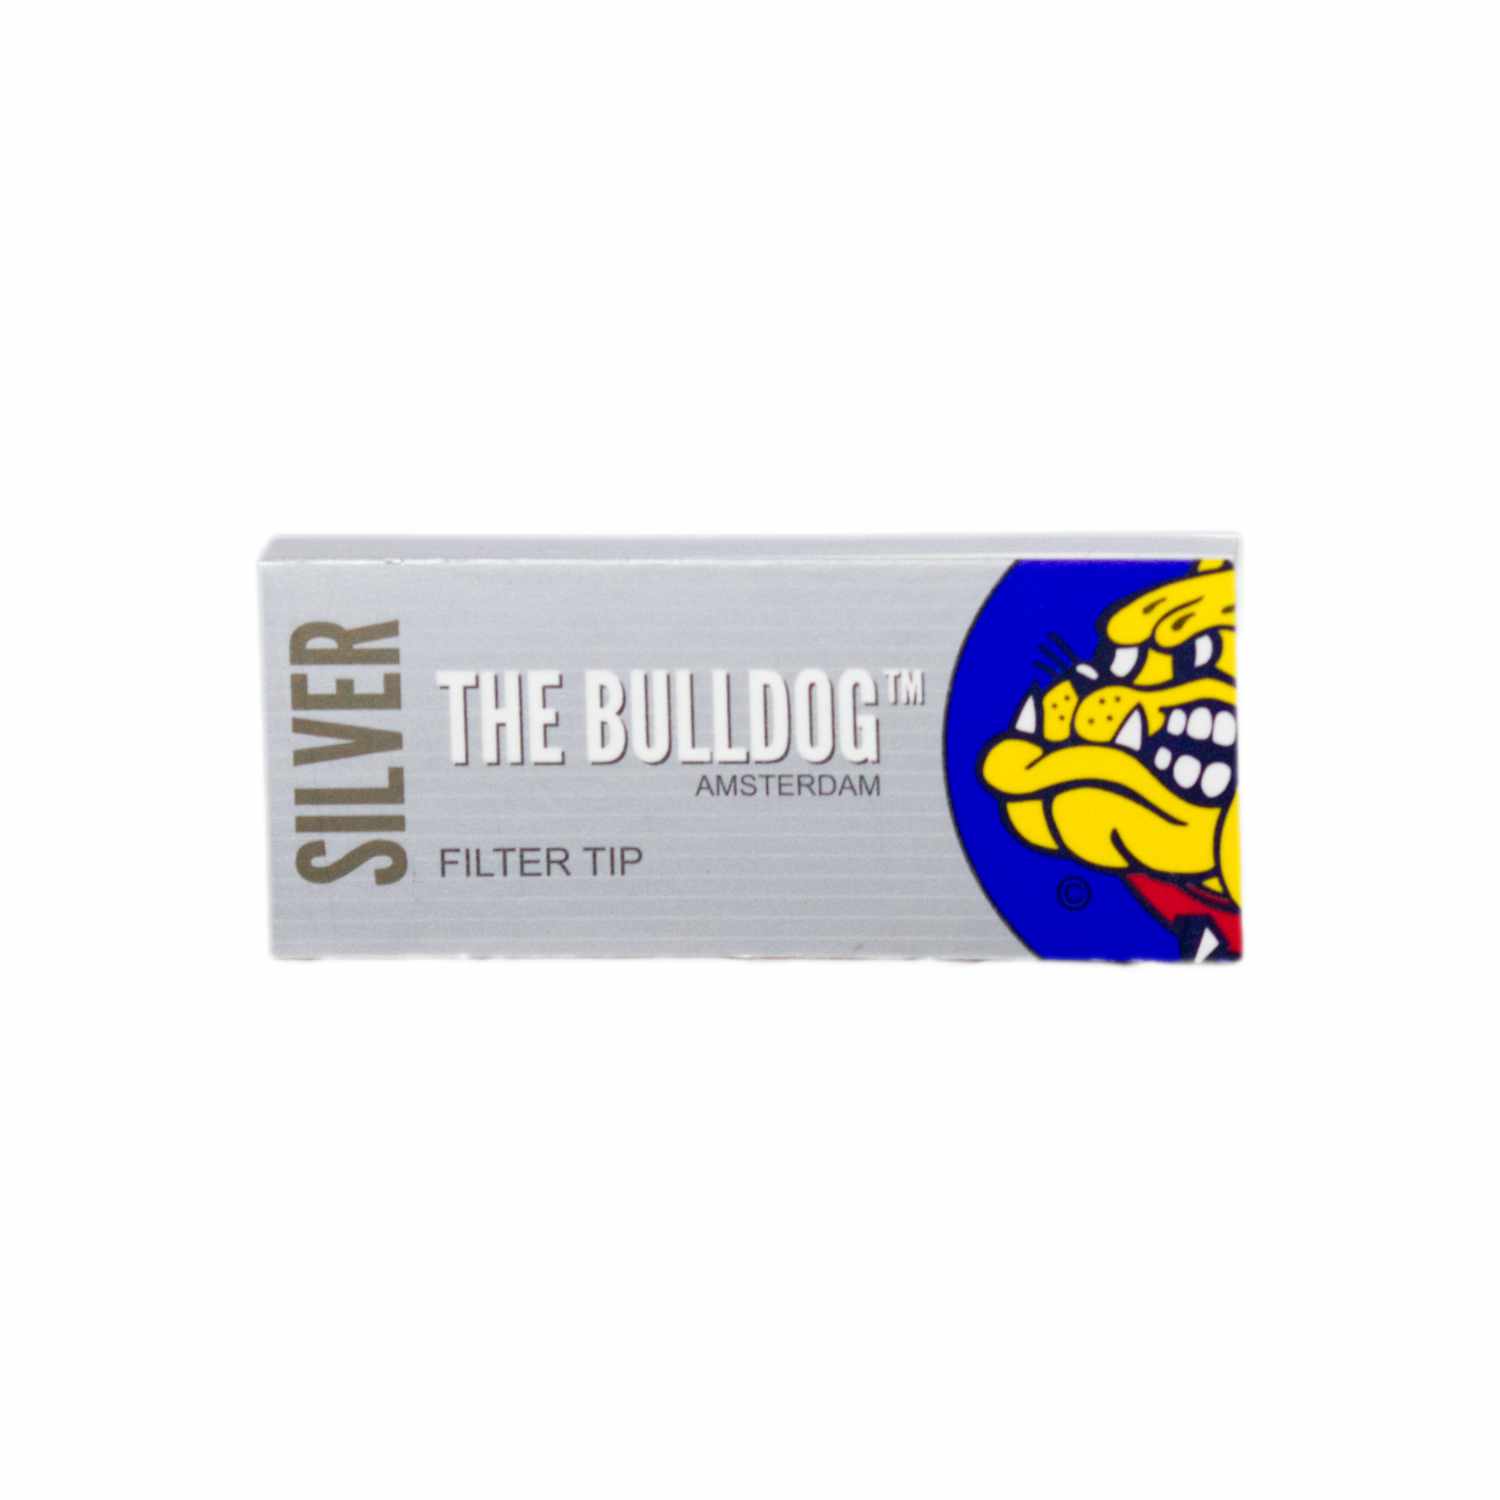 Filtres en carton “The Bulldog” Silver perforés